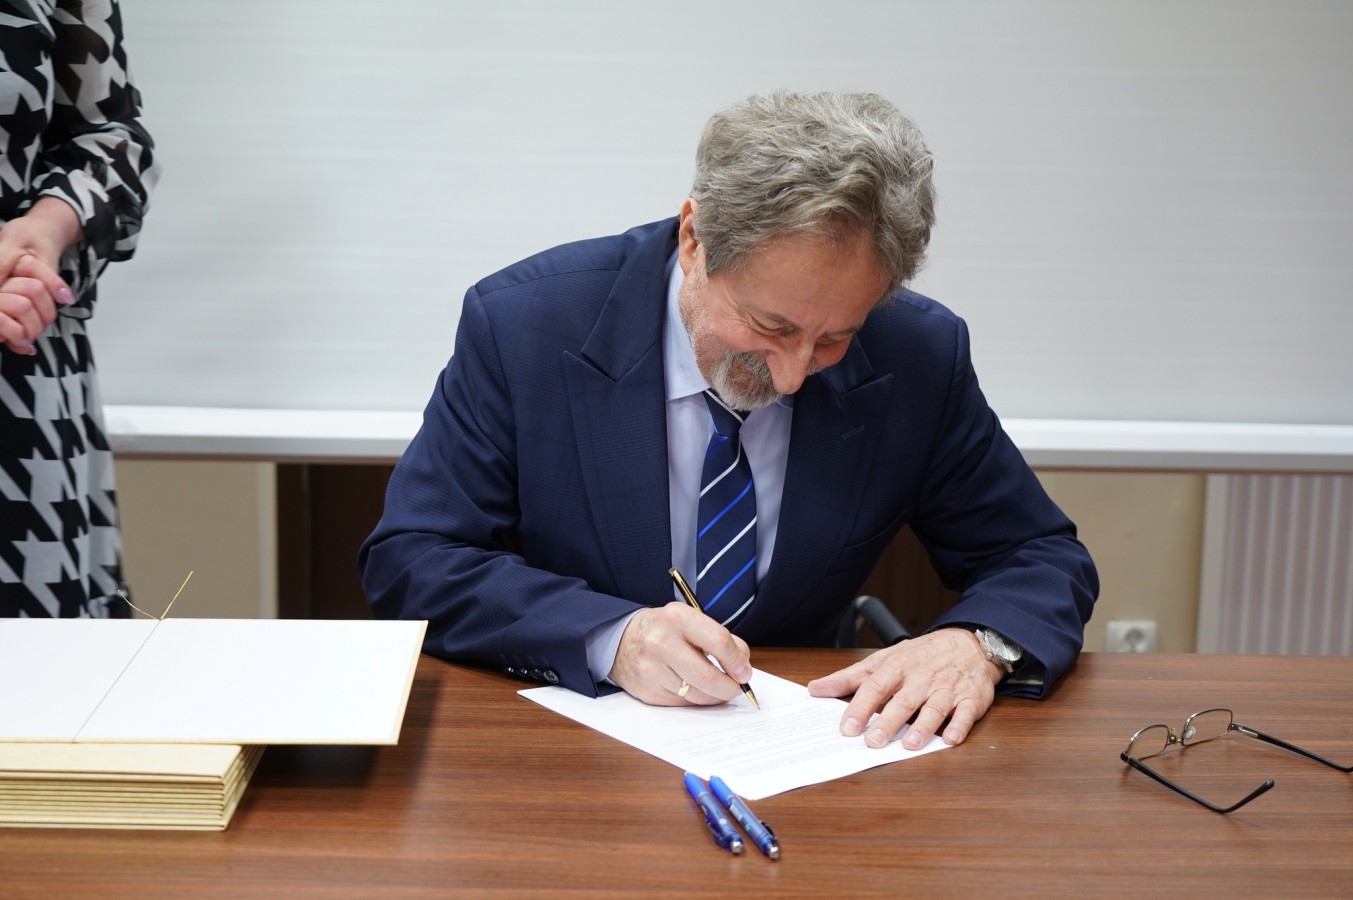 Podpisanie porozumienia Partnerskiego Powiatu Gryfickiego w sprawie realizacji Zintegrowanych Inwestycji Terytorialnych